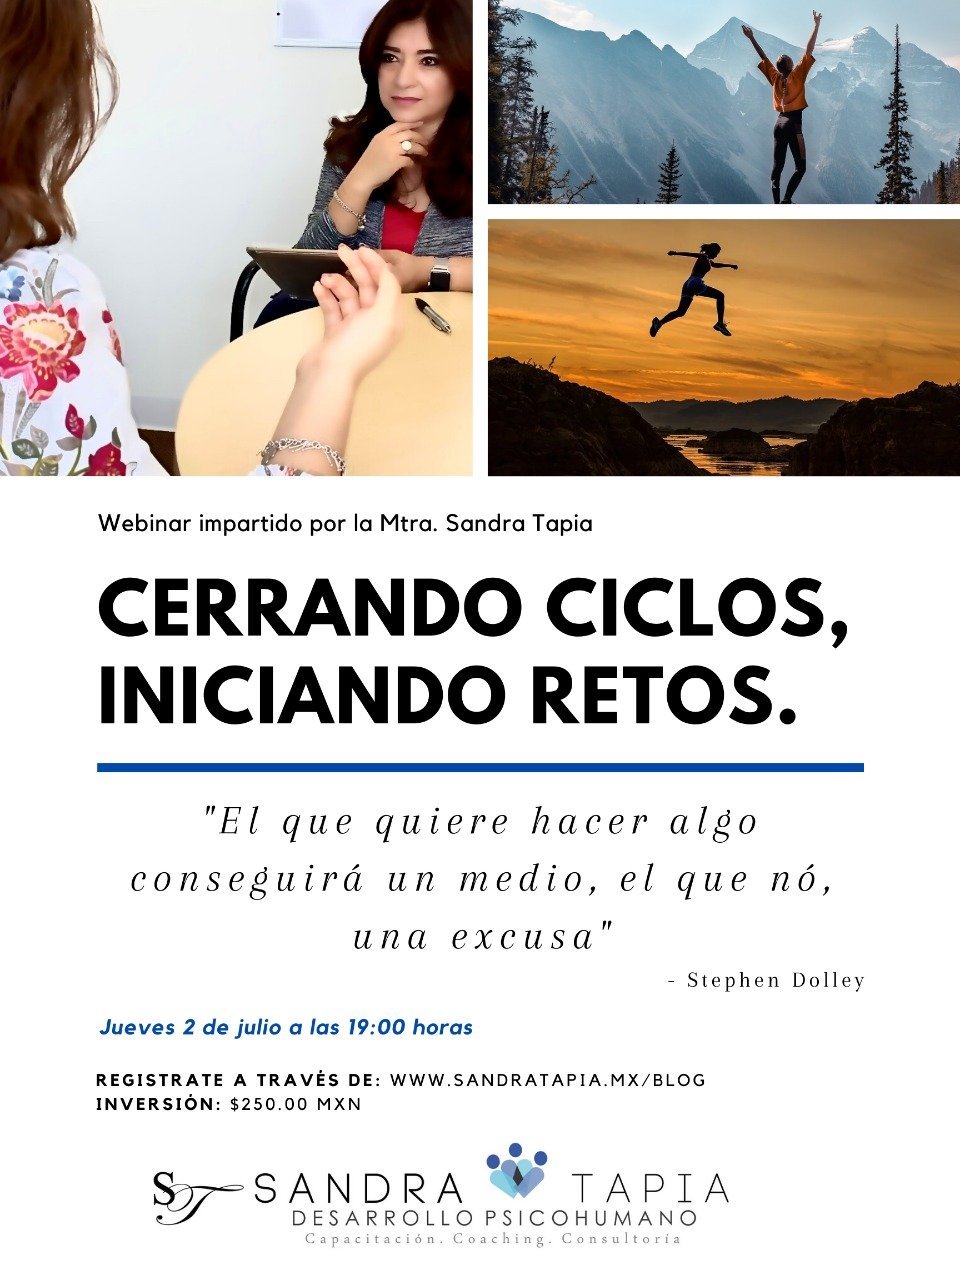 WEBINAR “CERRANDO CICLOS, INICIANDO RETOS” » SandraTapia.mx